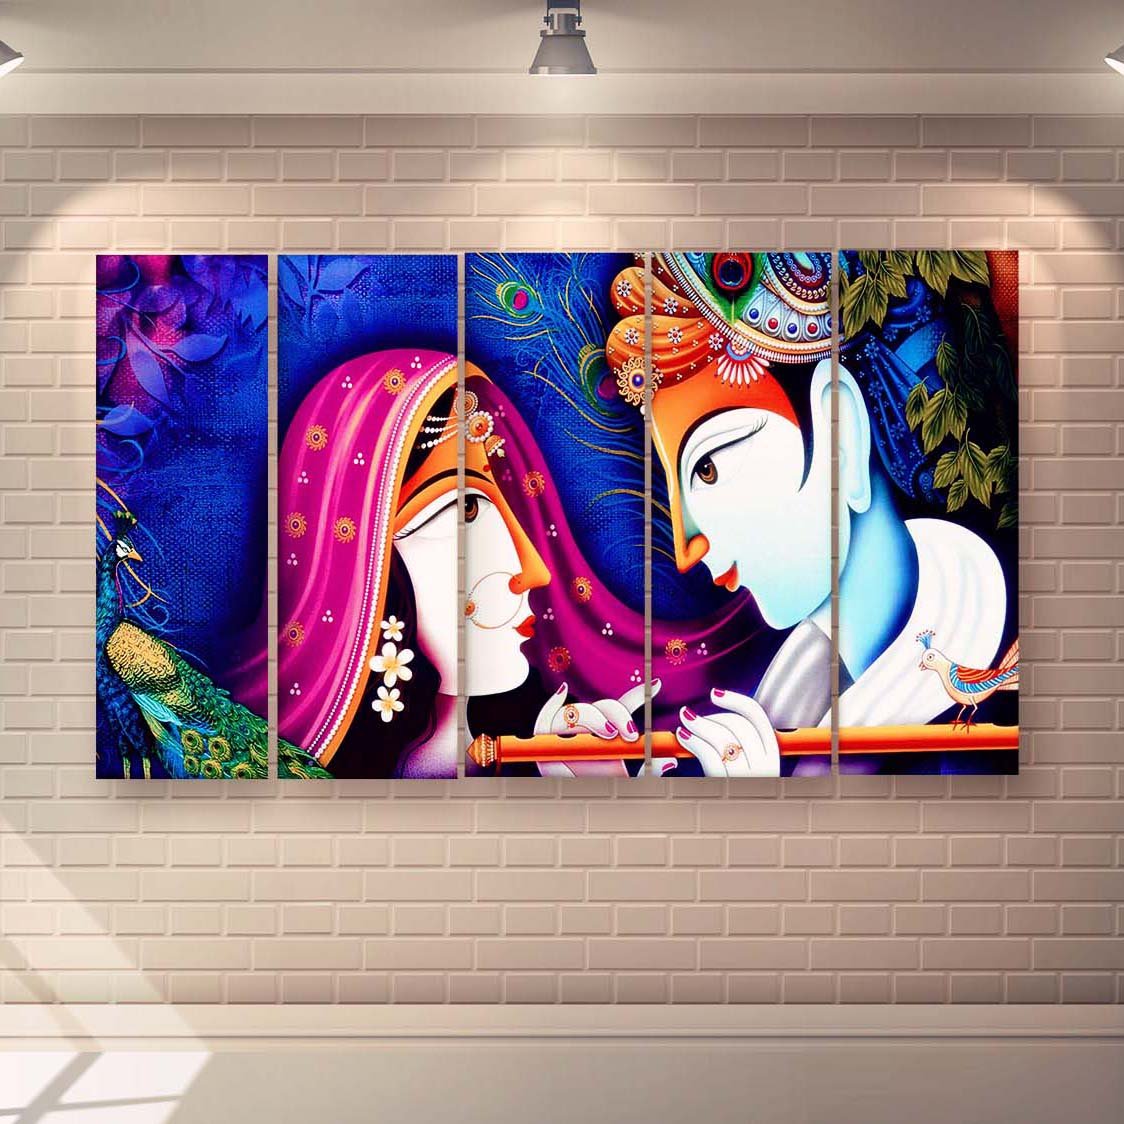 Casperme Radha Krishna Multiple Frames Wall Painting For Living Room,